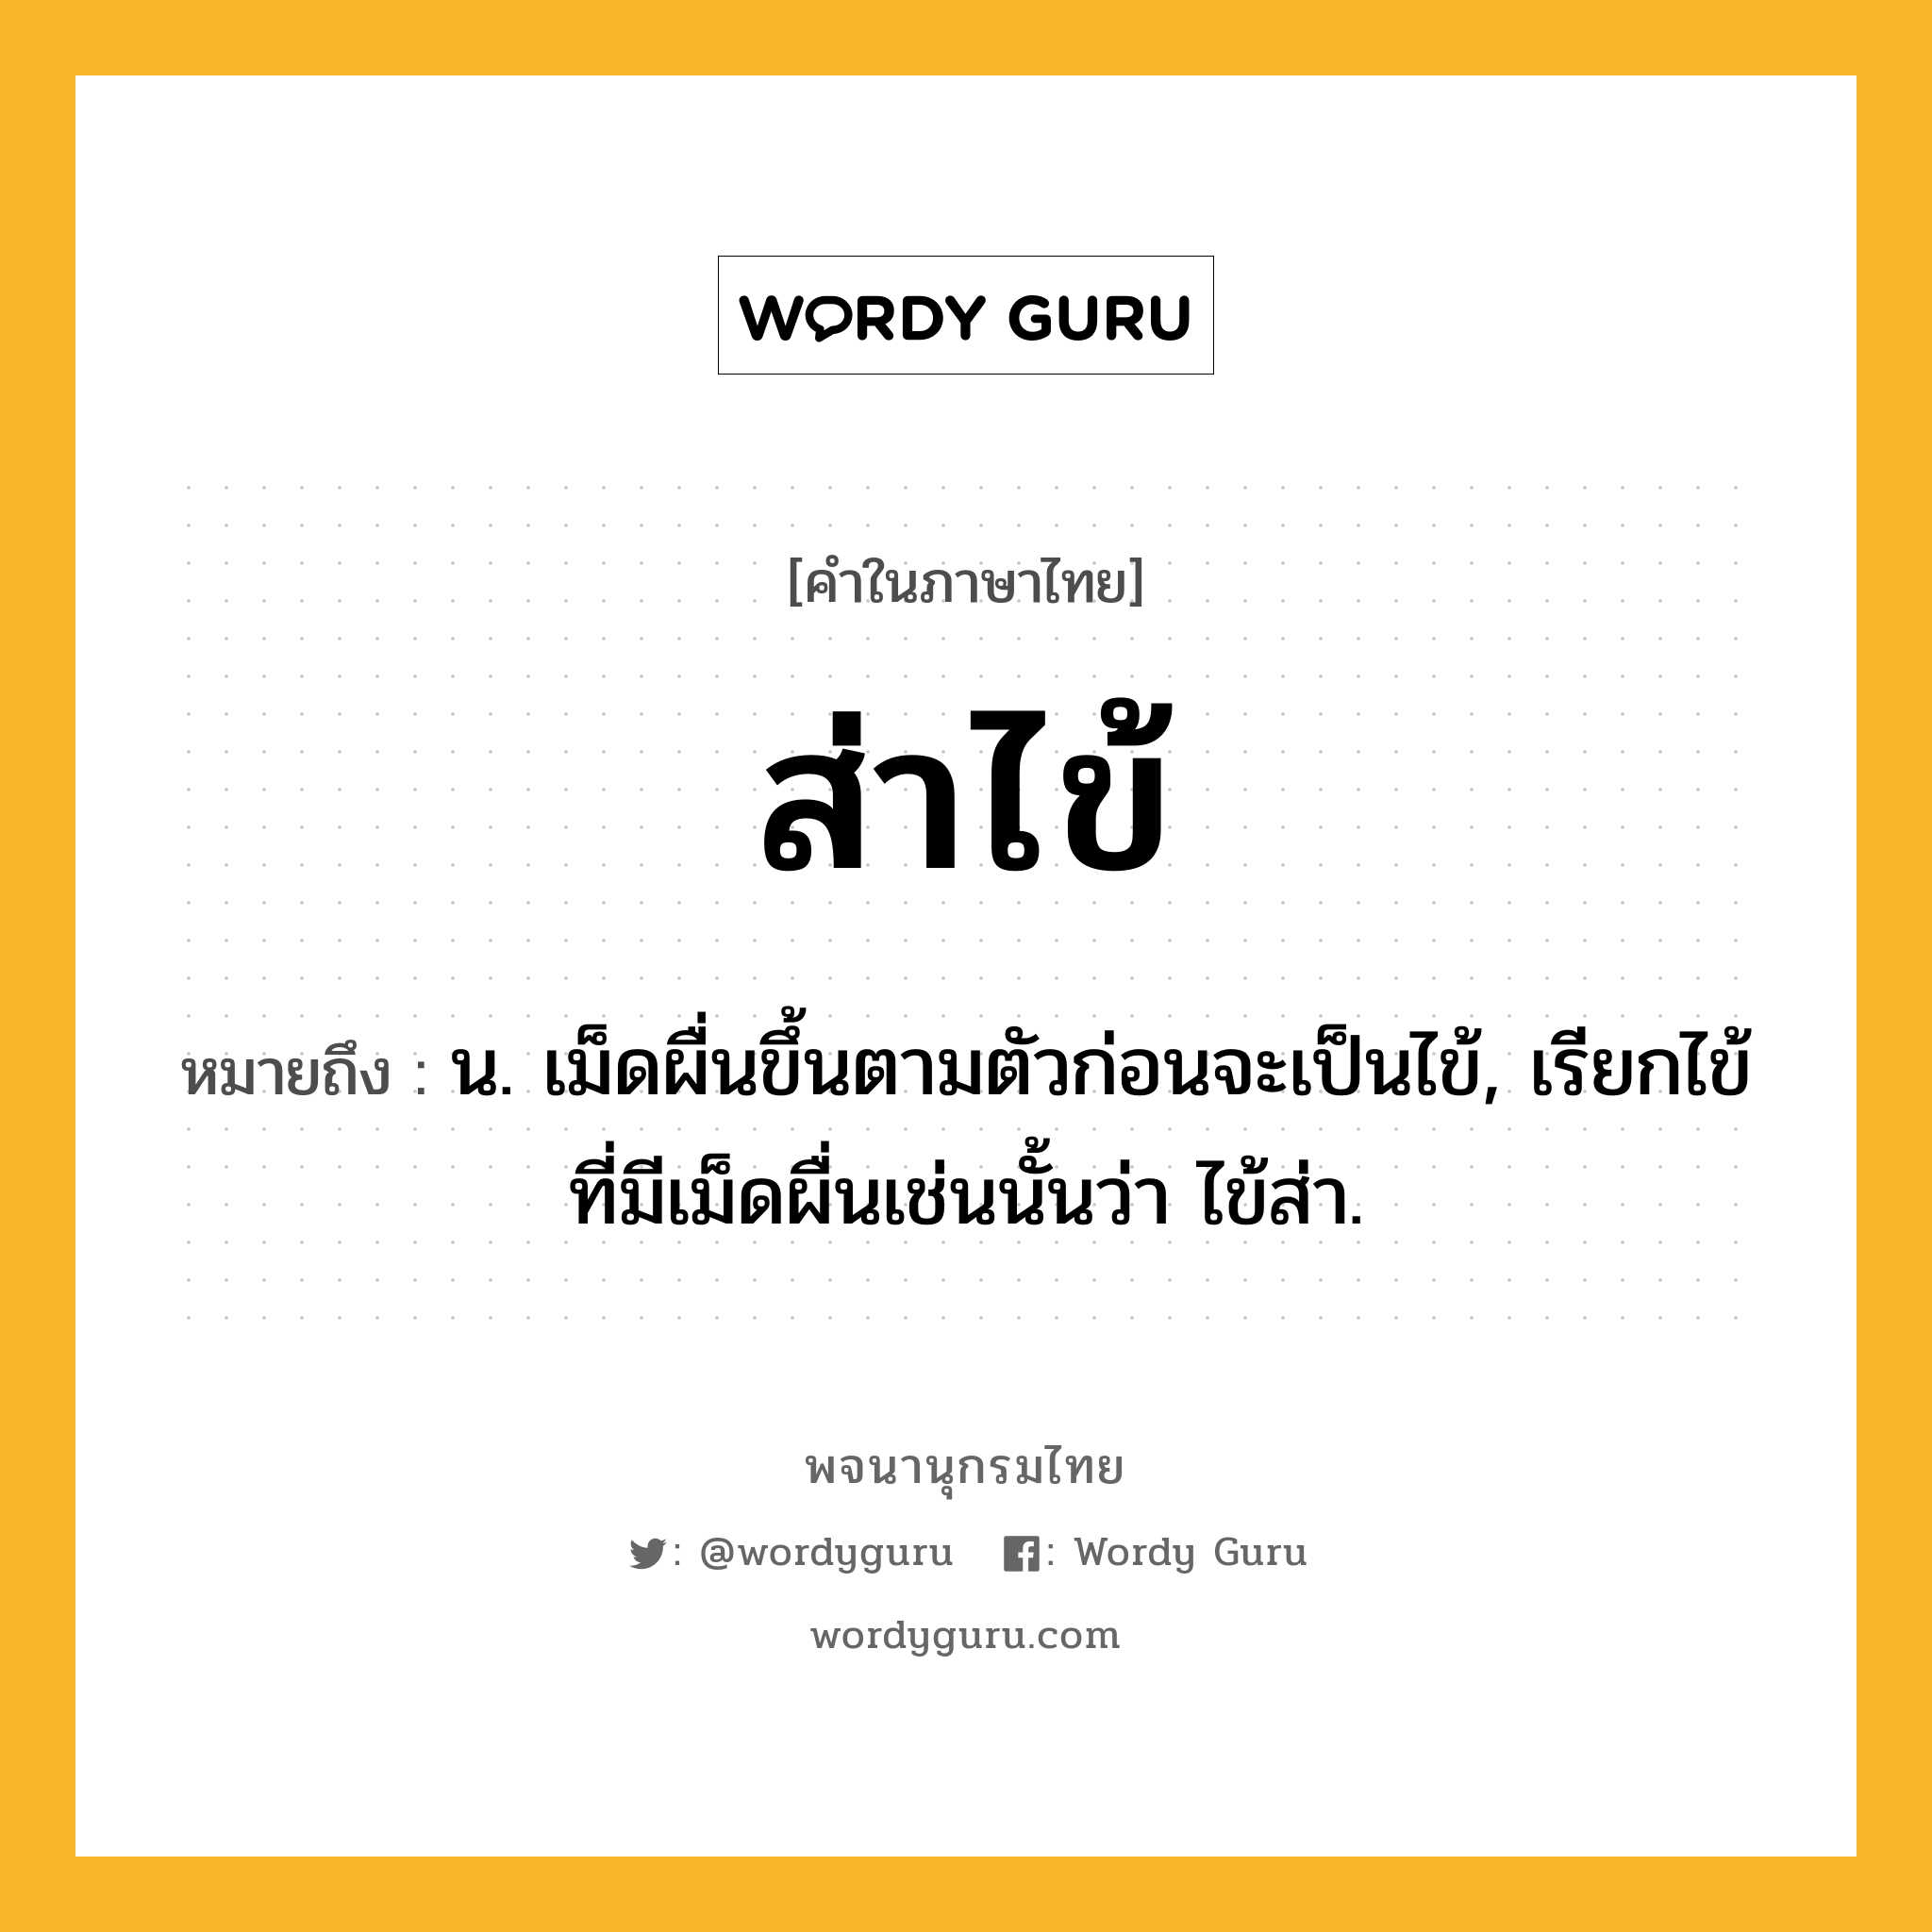 ส่าไข้ ความหมาย หมายถึงอะไร?, คำในภาษาไทย ส่าไข้ หมายถึง น. เม็ดผื่นขึ้นตามตัวก่อนจะเป็นไข้, เรียกไข้ที่มีเม็ดผื่นเช่นนั้นว่า ไข้ส่า.